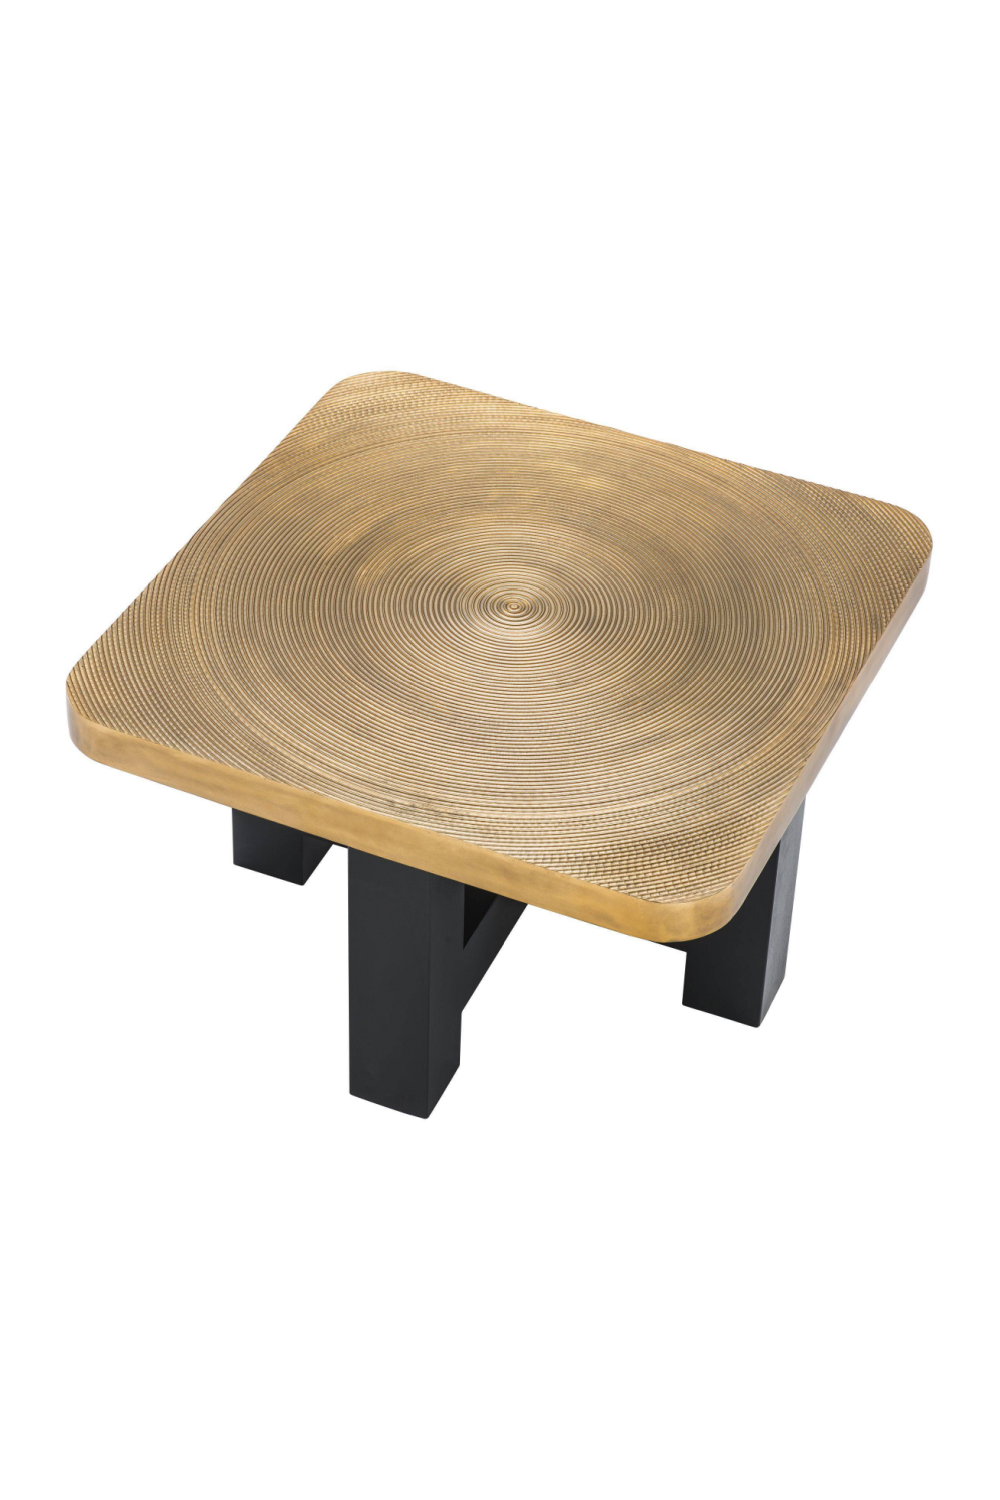 Ribbed Brass Coffee Table | Eichholtz Agoura | #1 Eichholtz Retailer